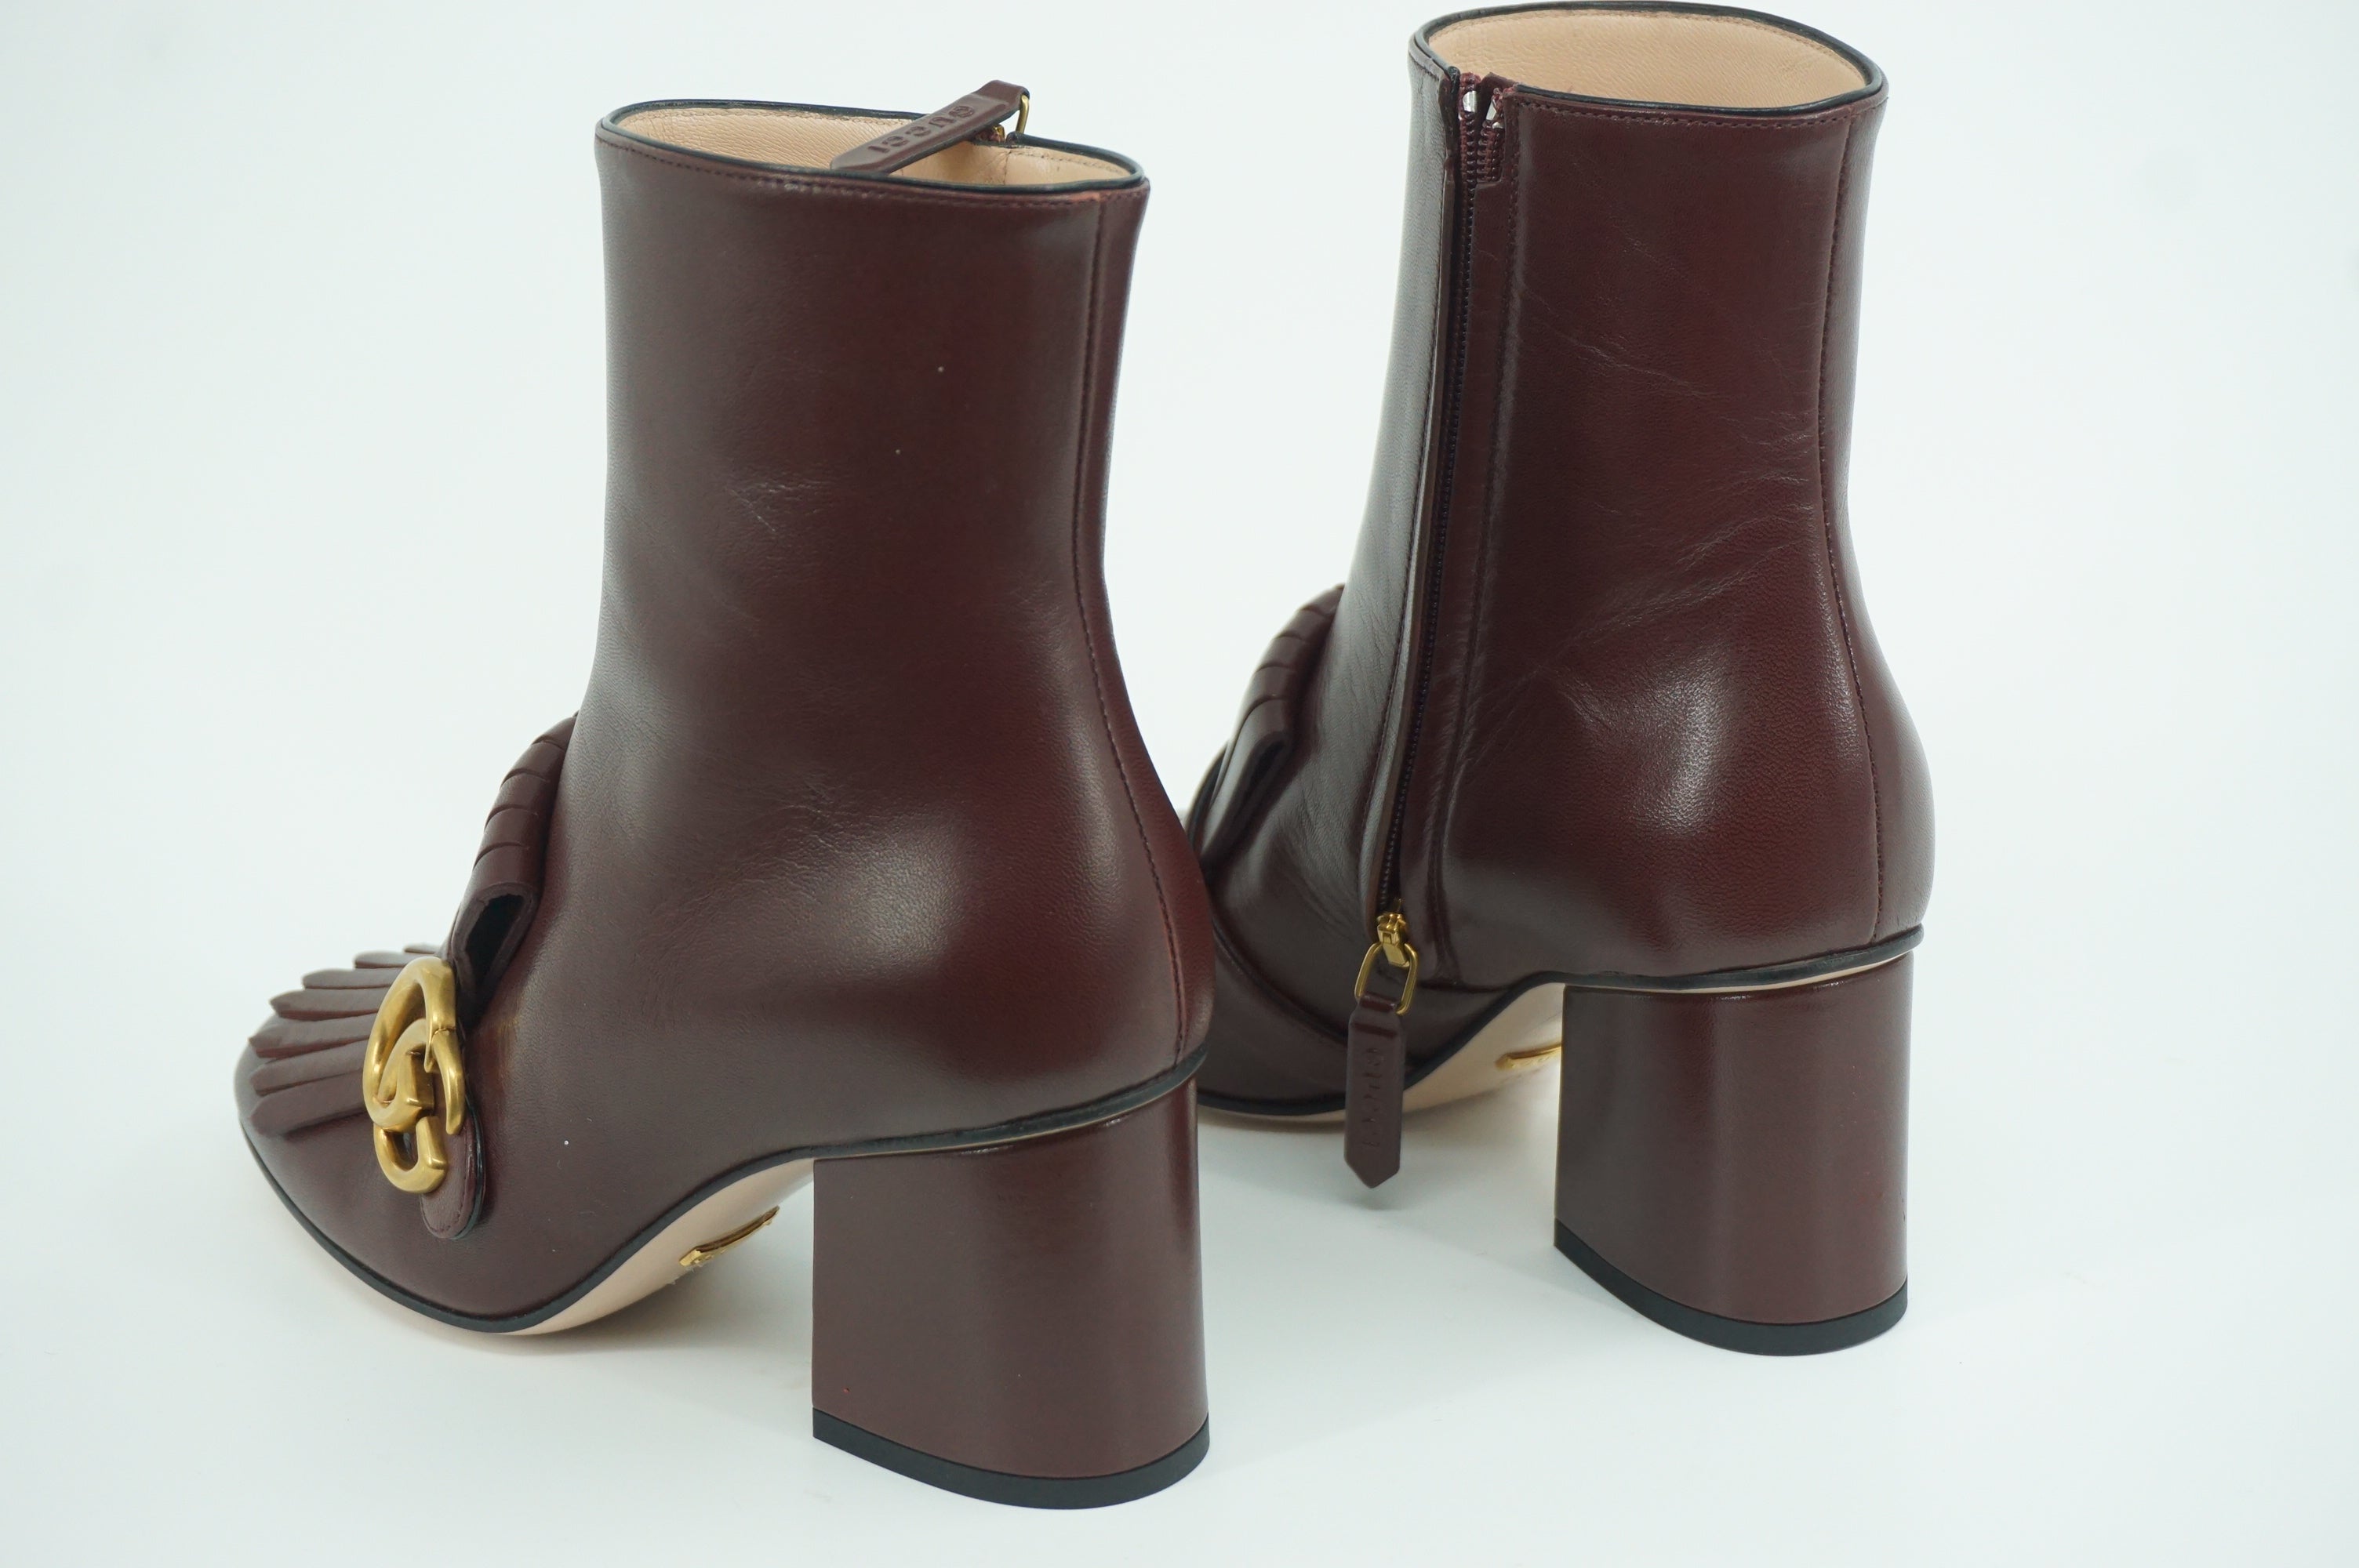 Gucci Marmont GG Kiltie Fringe Leather Ankle Boots Pumps SZ 35.5 NIB Logo $1250